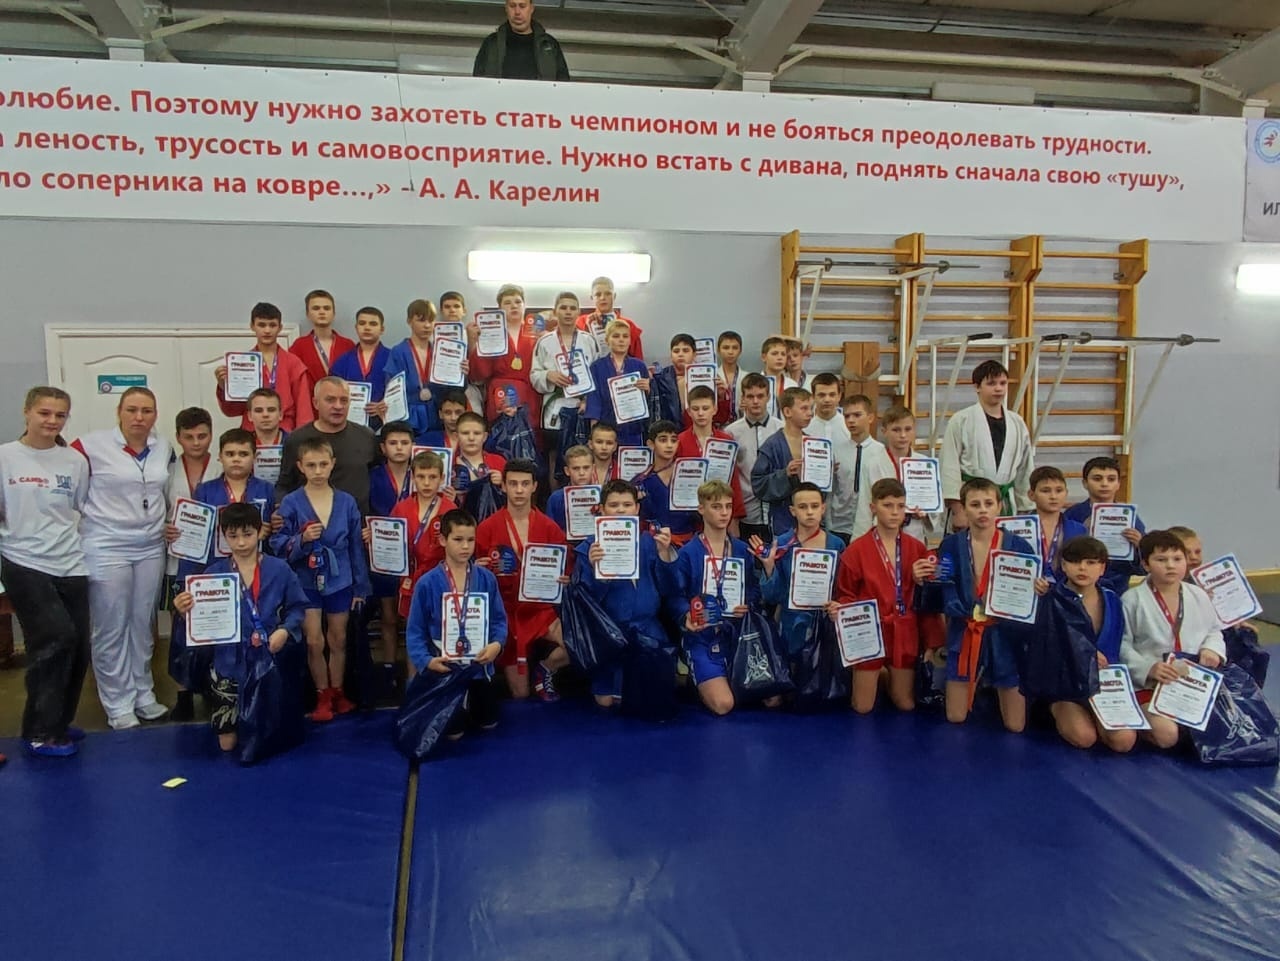 Воспитанники тренеров Константина Гелбахиани и Александра Корчагина успешно выступили на турнире по самбо в Губкине. 